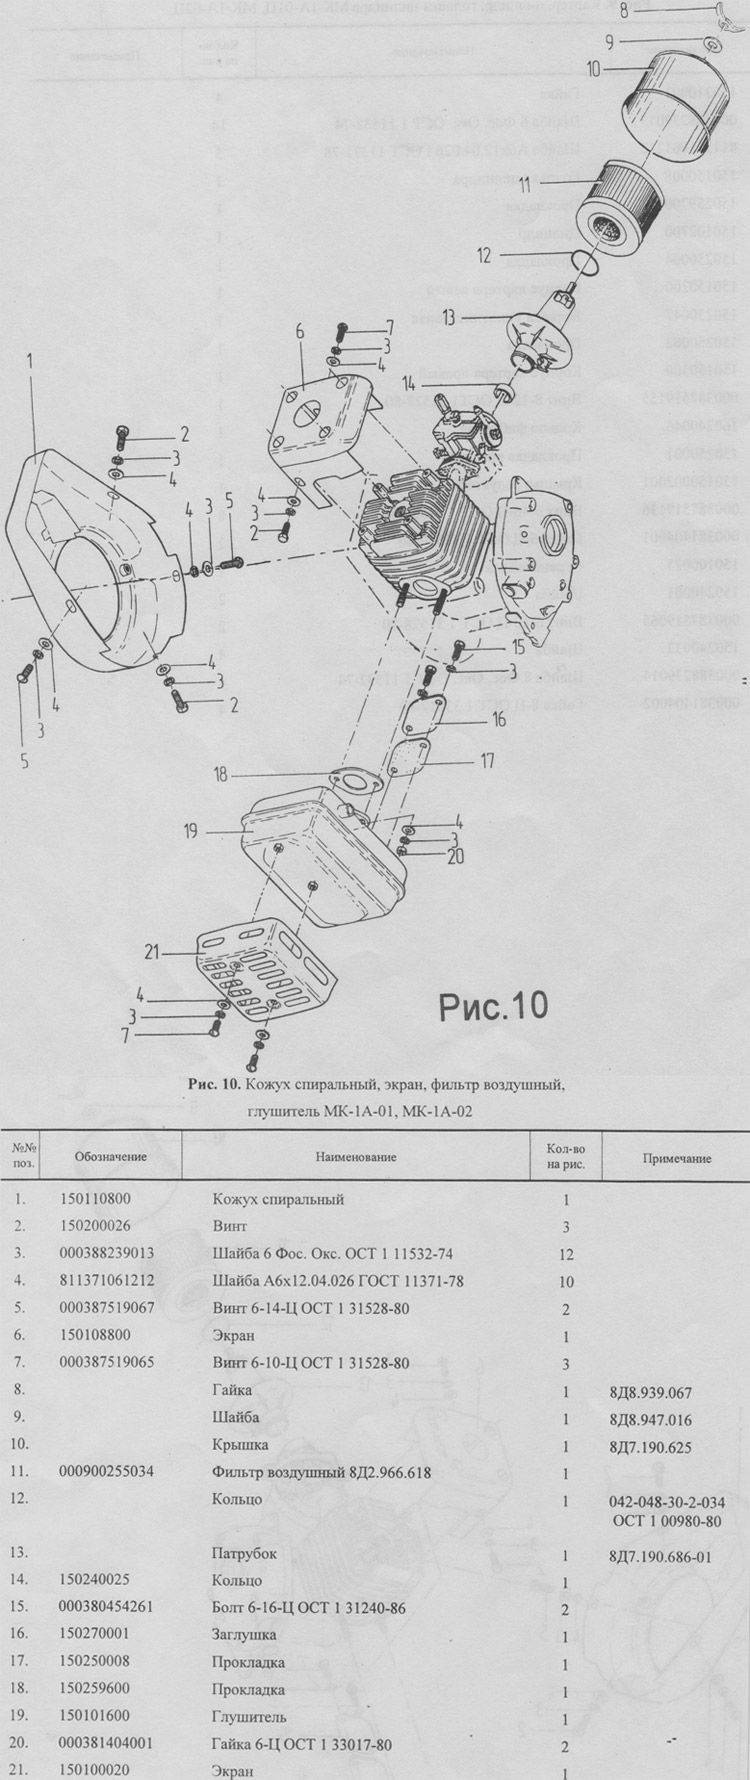 Мотокультиватор крот мк-1а - технические характеристики, устройство